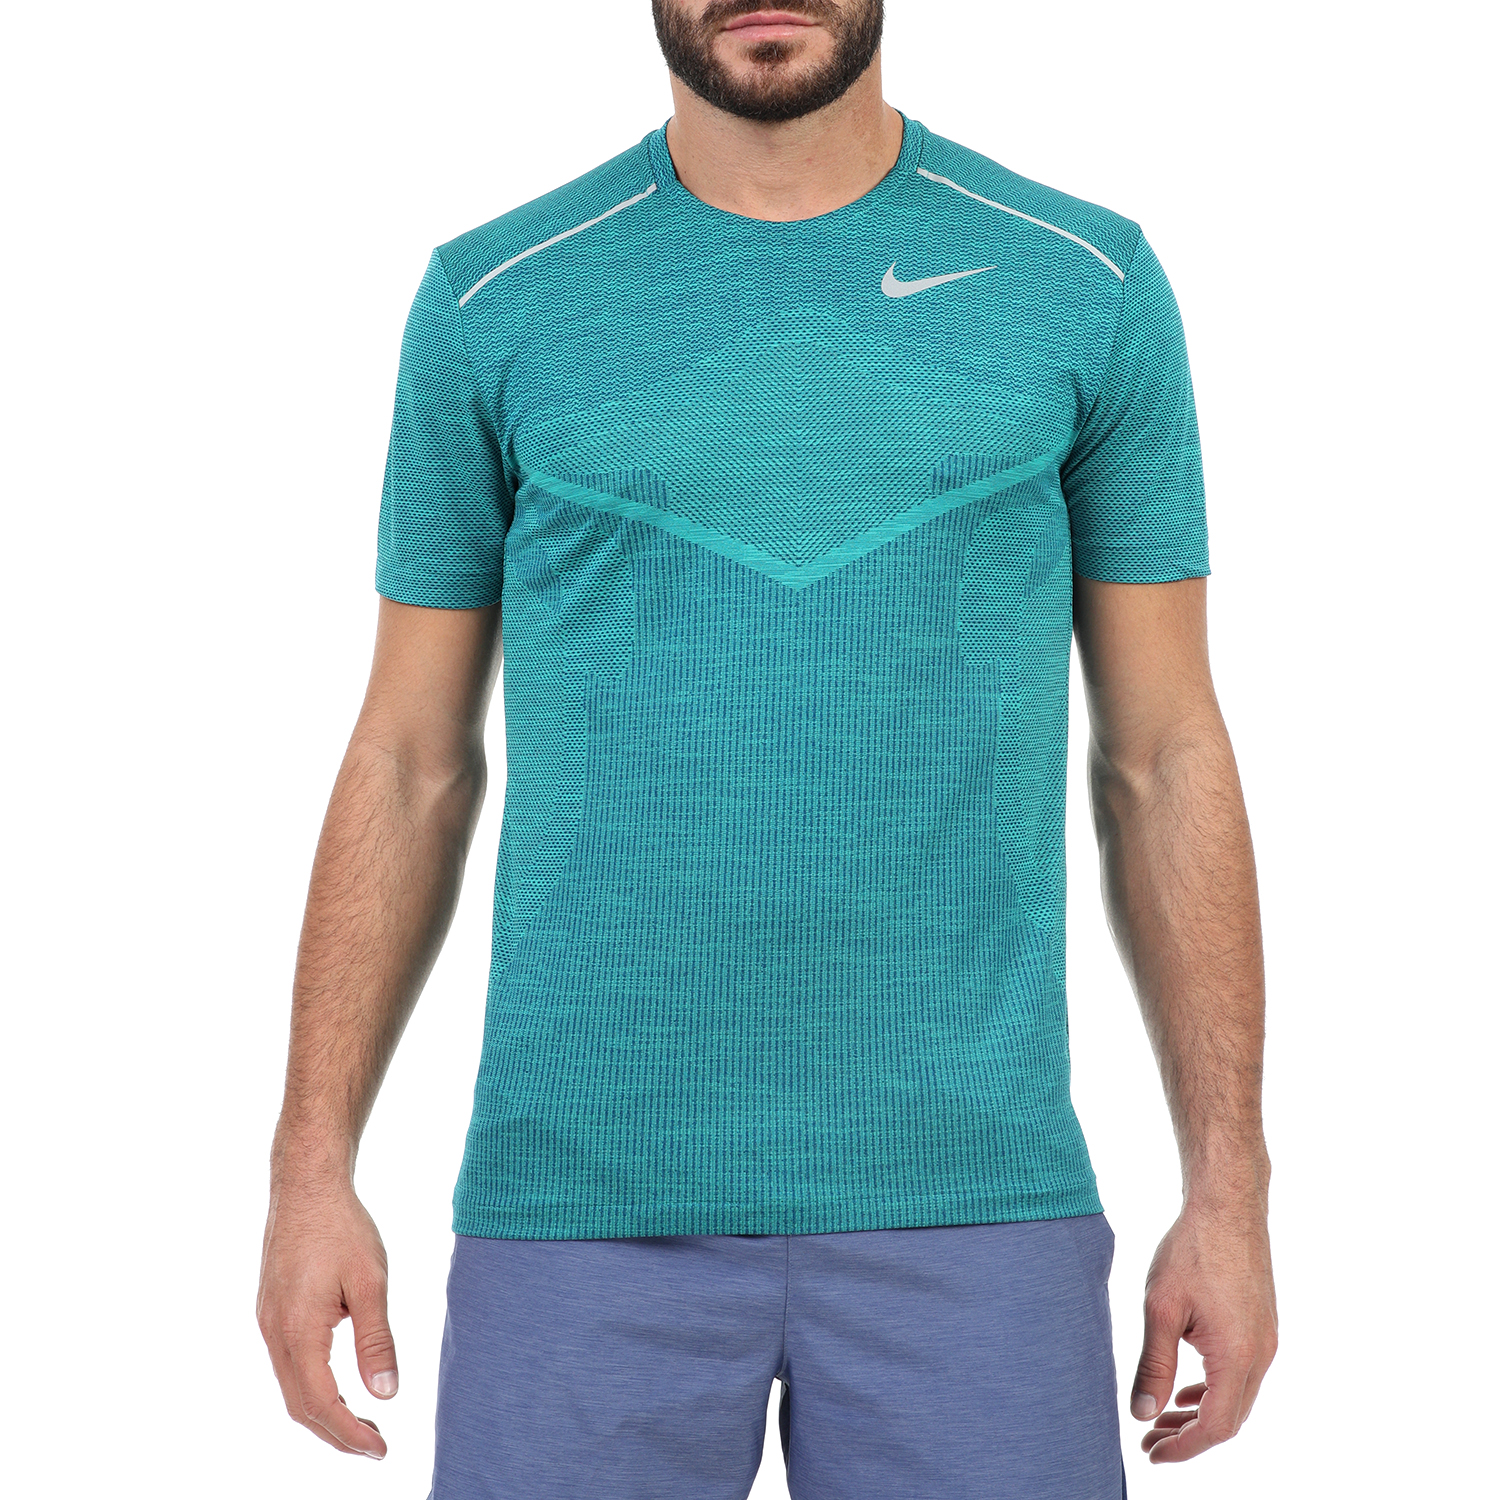 Ανδρικά/Ρούχα/Αθλητικά/T-shirt NIKE - Ανδρικό t-shirt Nike TechKnit Ultra μπλε